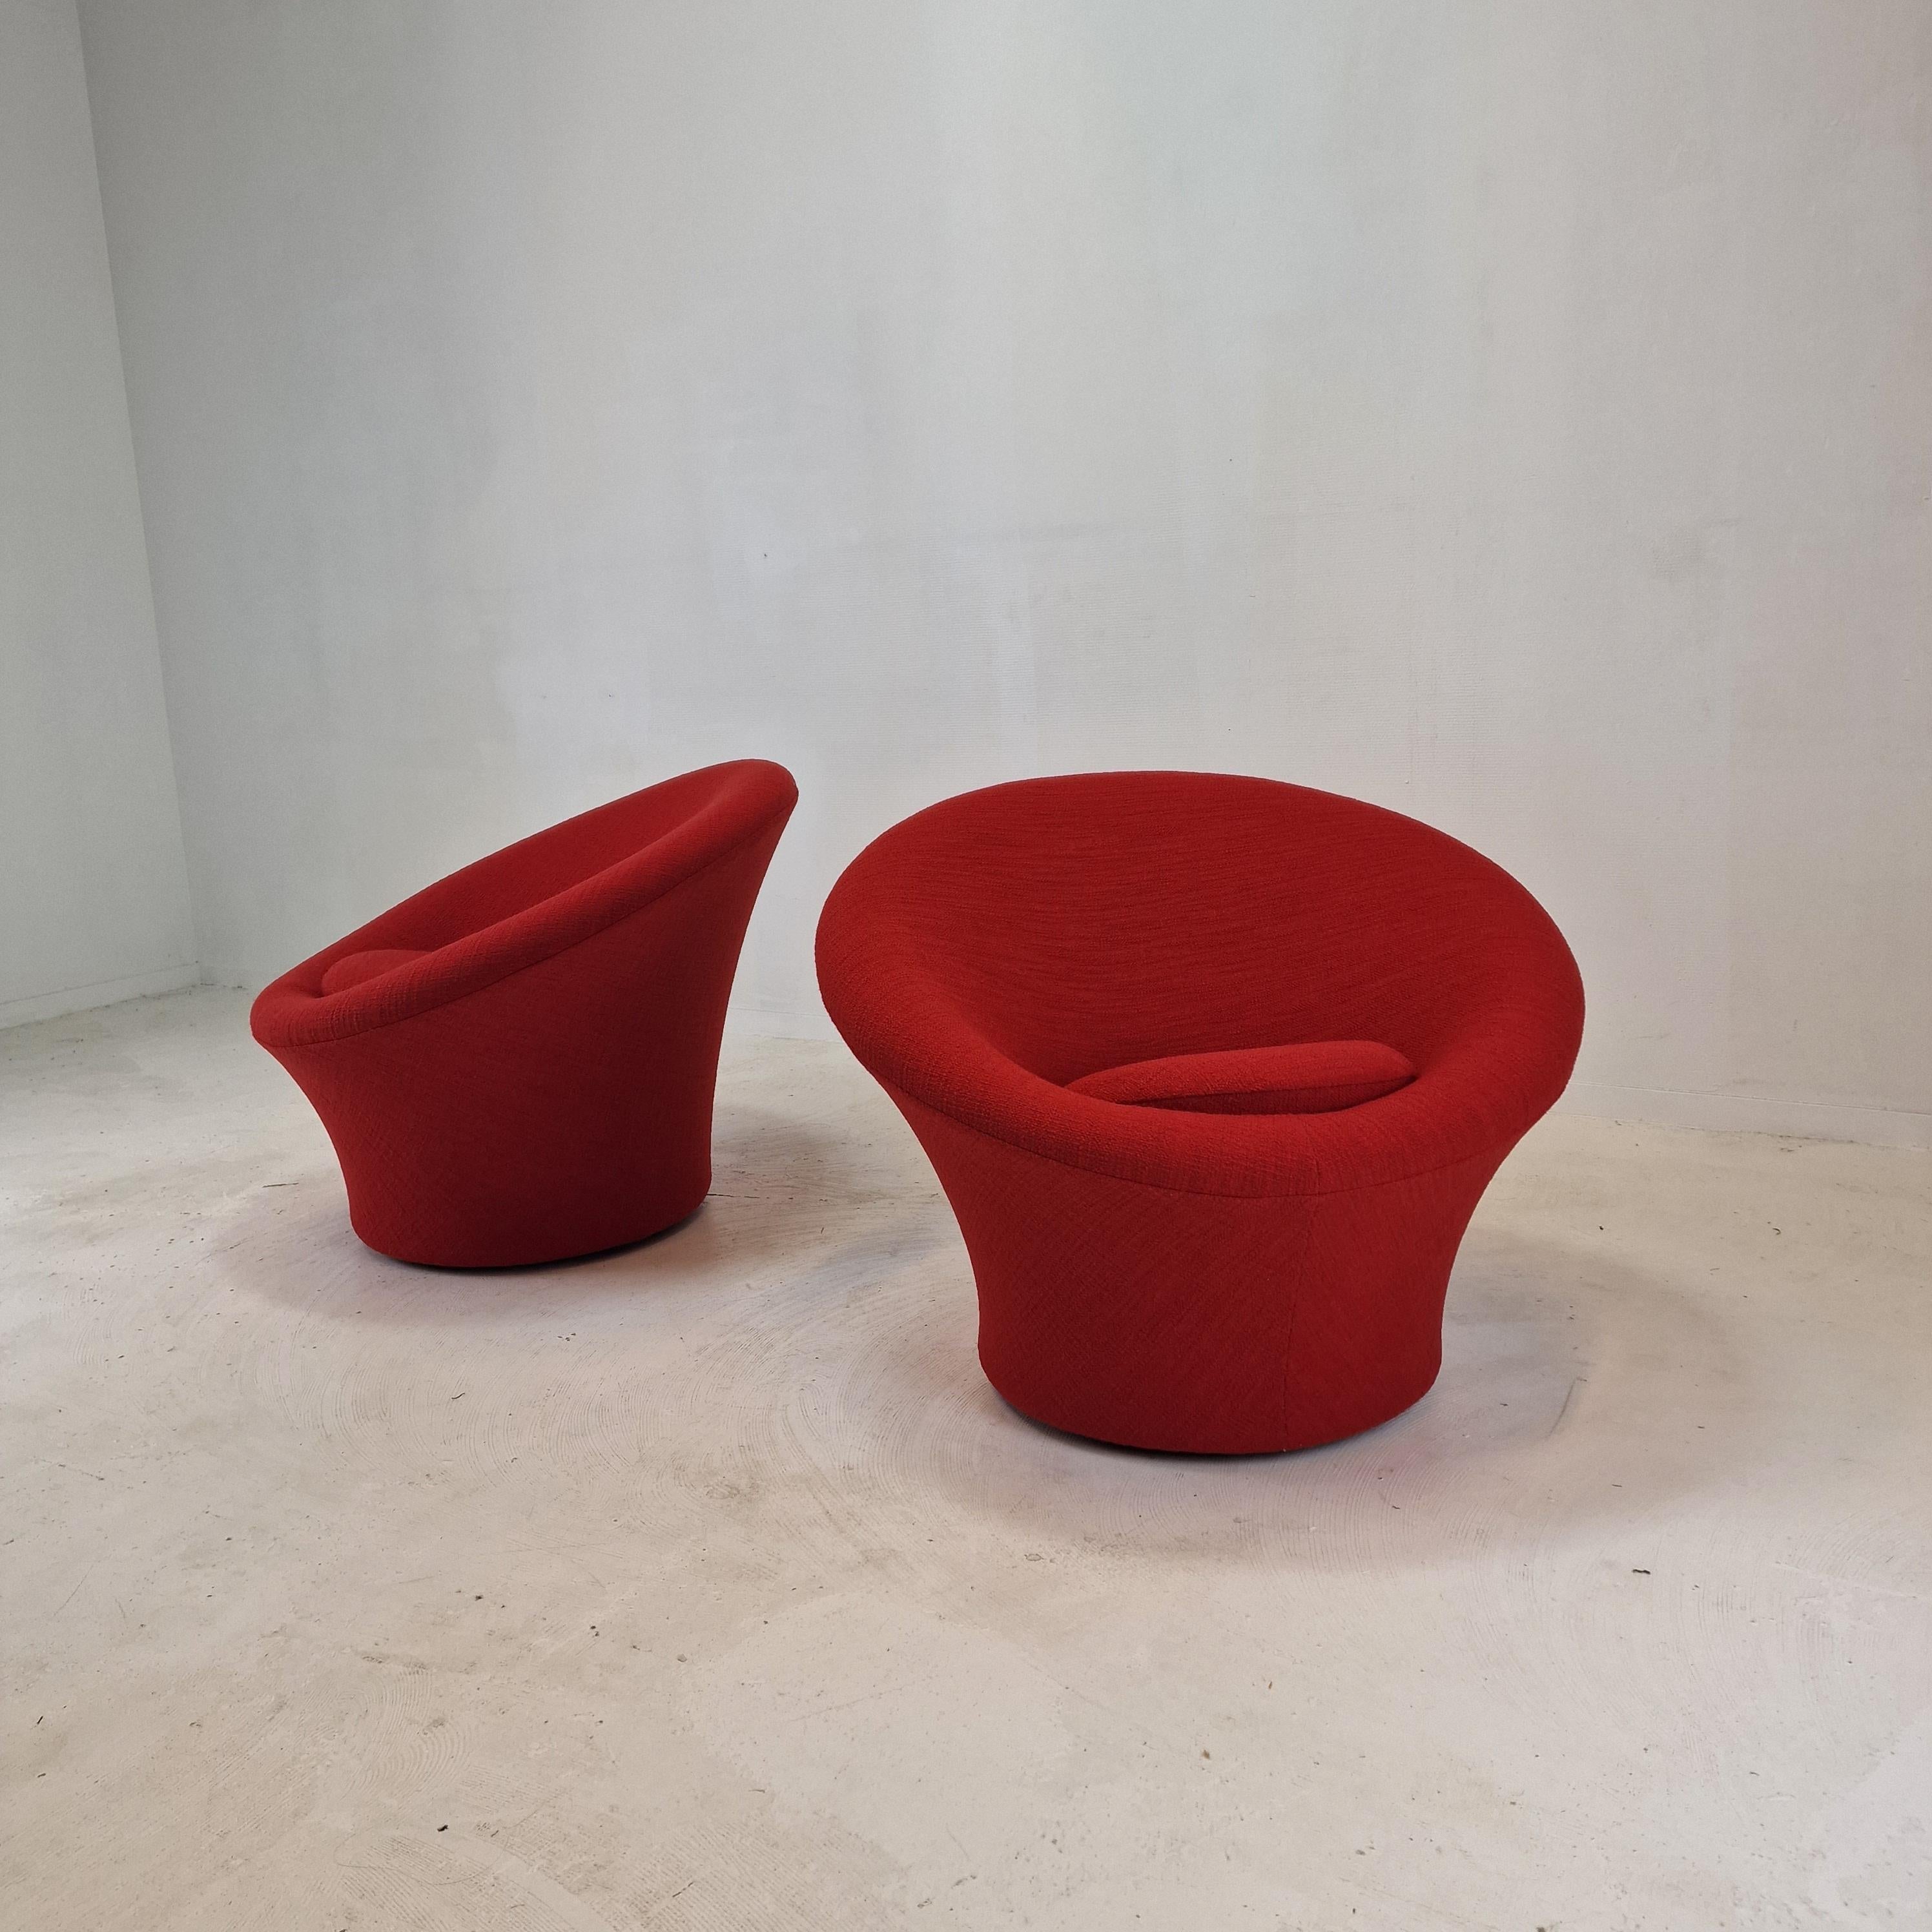 Chaise Artifort Mushroom très confortable et accueillante, conçue par Pierre Paulin dans les années 60. 
Ces chaises particulières ont été fabriquées dans les années 80.

Recouvert d'un tissu très exclusif de Dedar Italy.
Ce tissu de laine a une